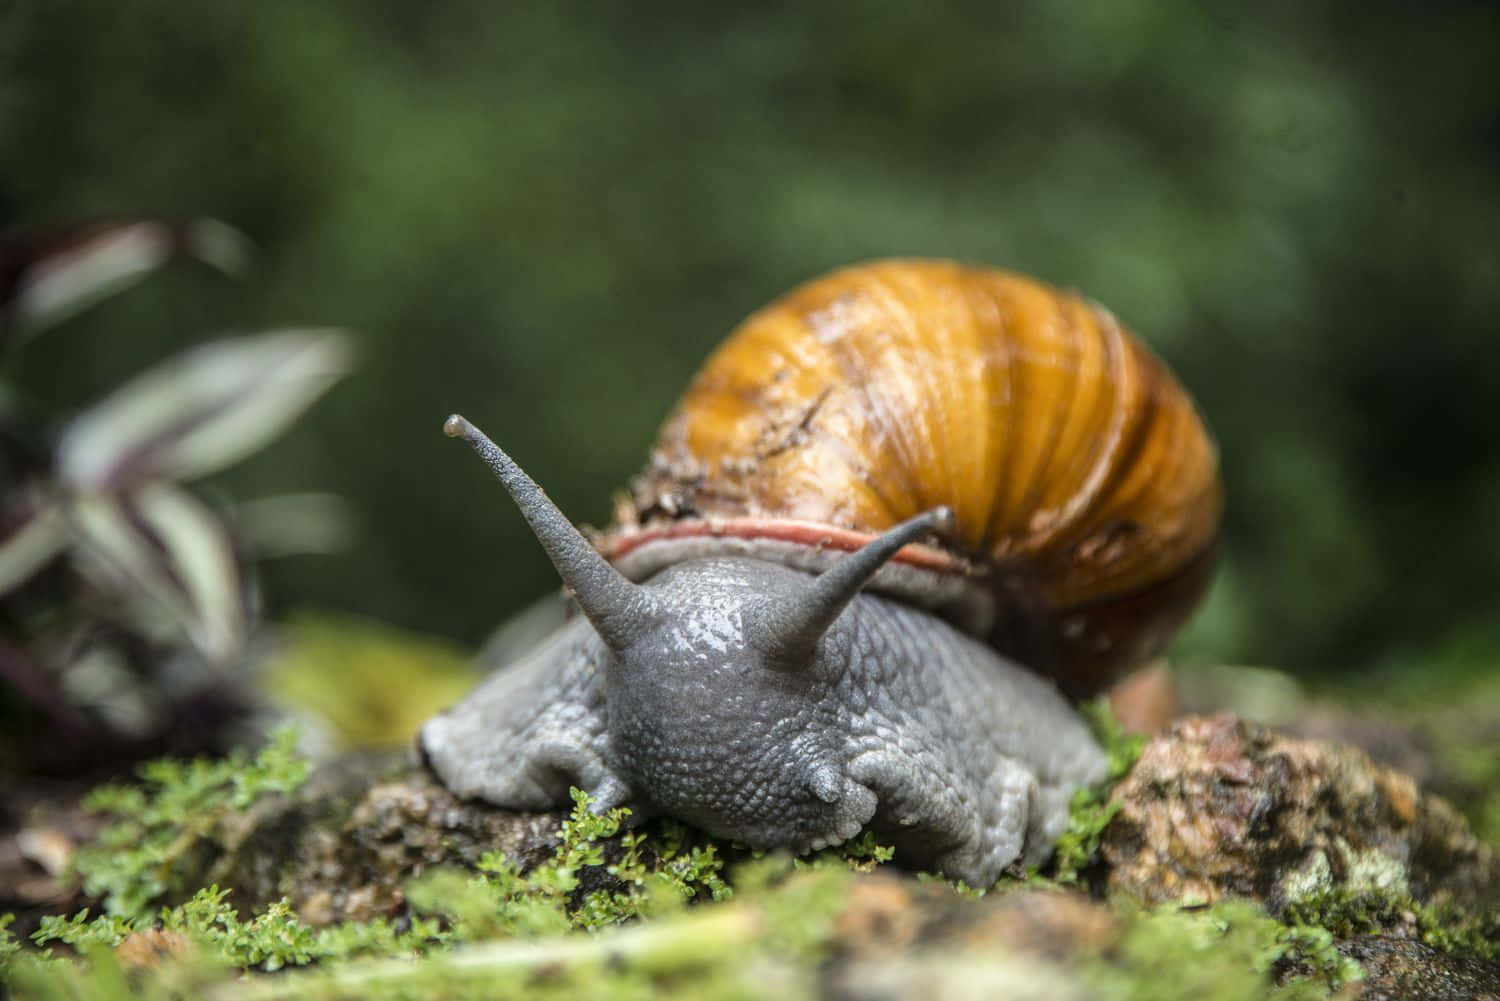 A Unique&Colorful Snail